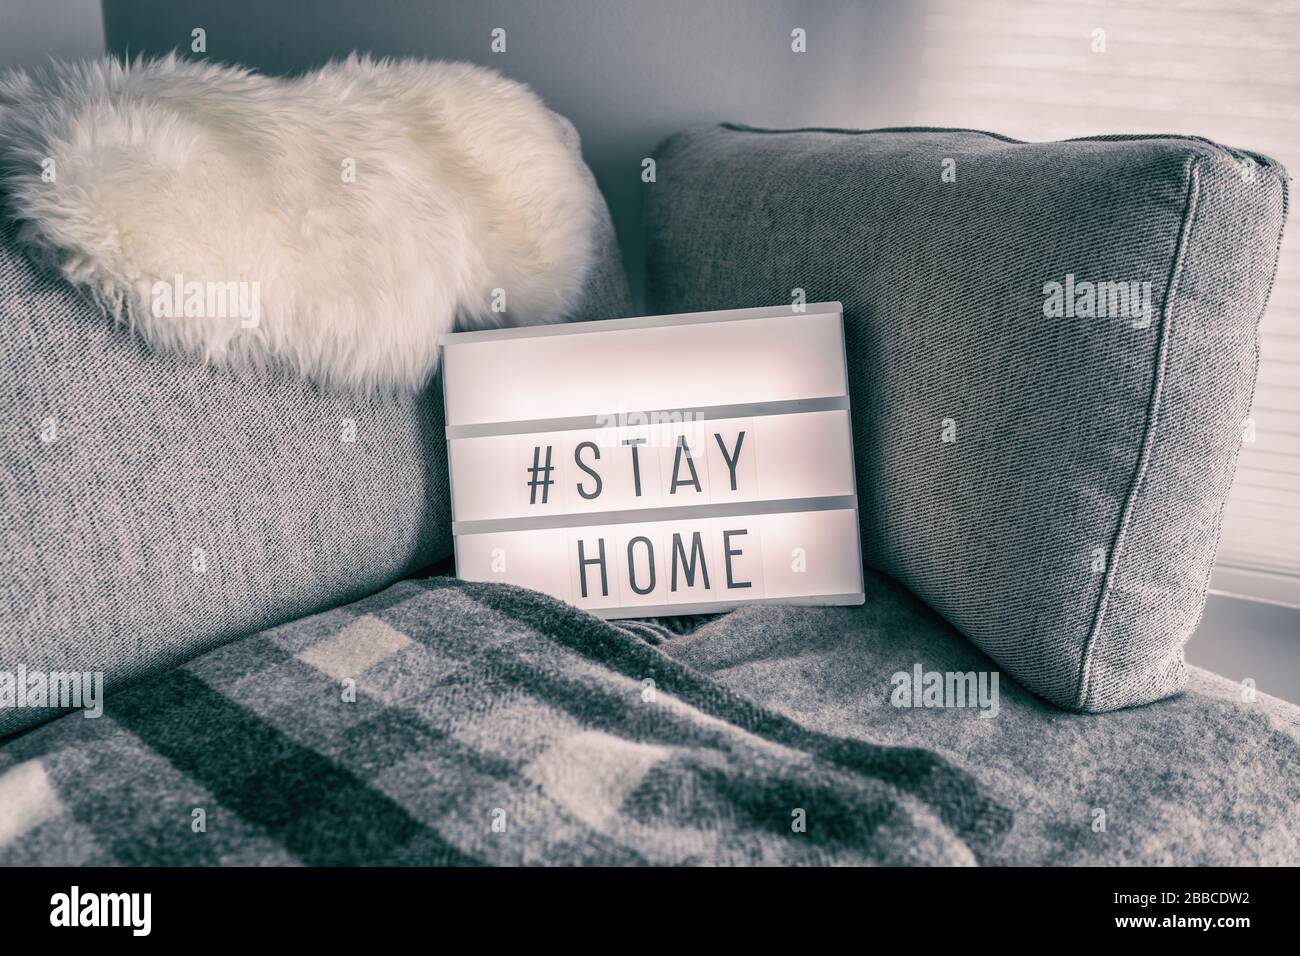 Coronavirus maison visionneuse signe avec hashtag message Hashtag STAYHOME brillant sur le canapé maison avec confortable fourrure de laine d'agneau, couverture. Texte COVID-19 pour promouvoir l'auto-isolation rester à la maison. Banque D'Images